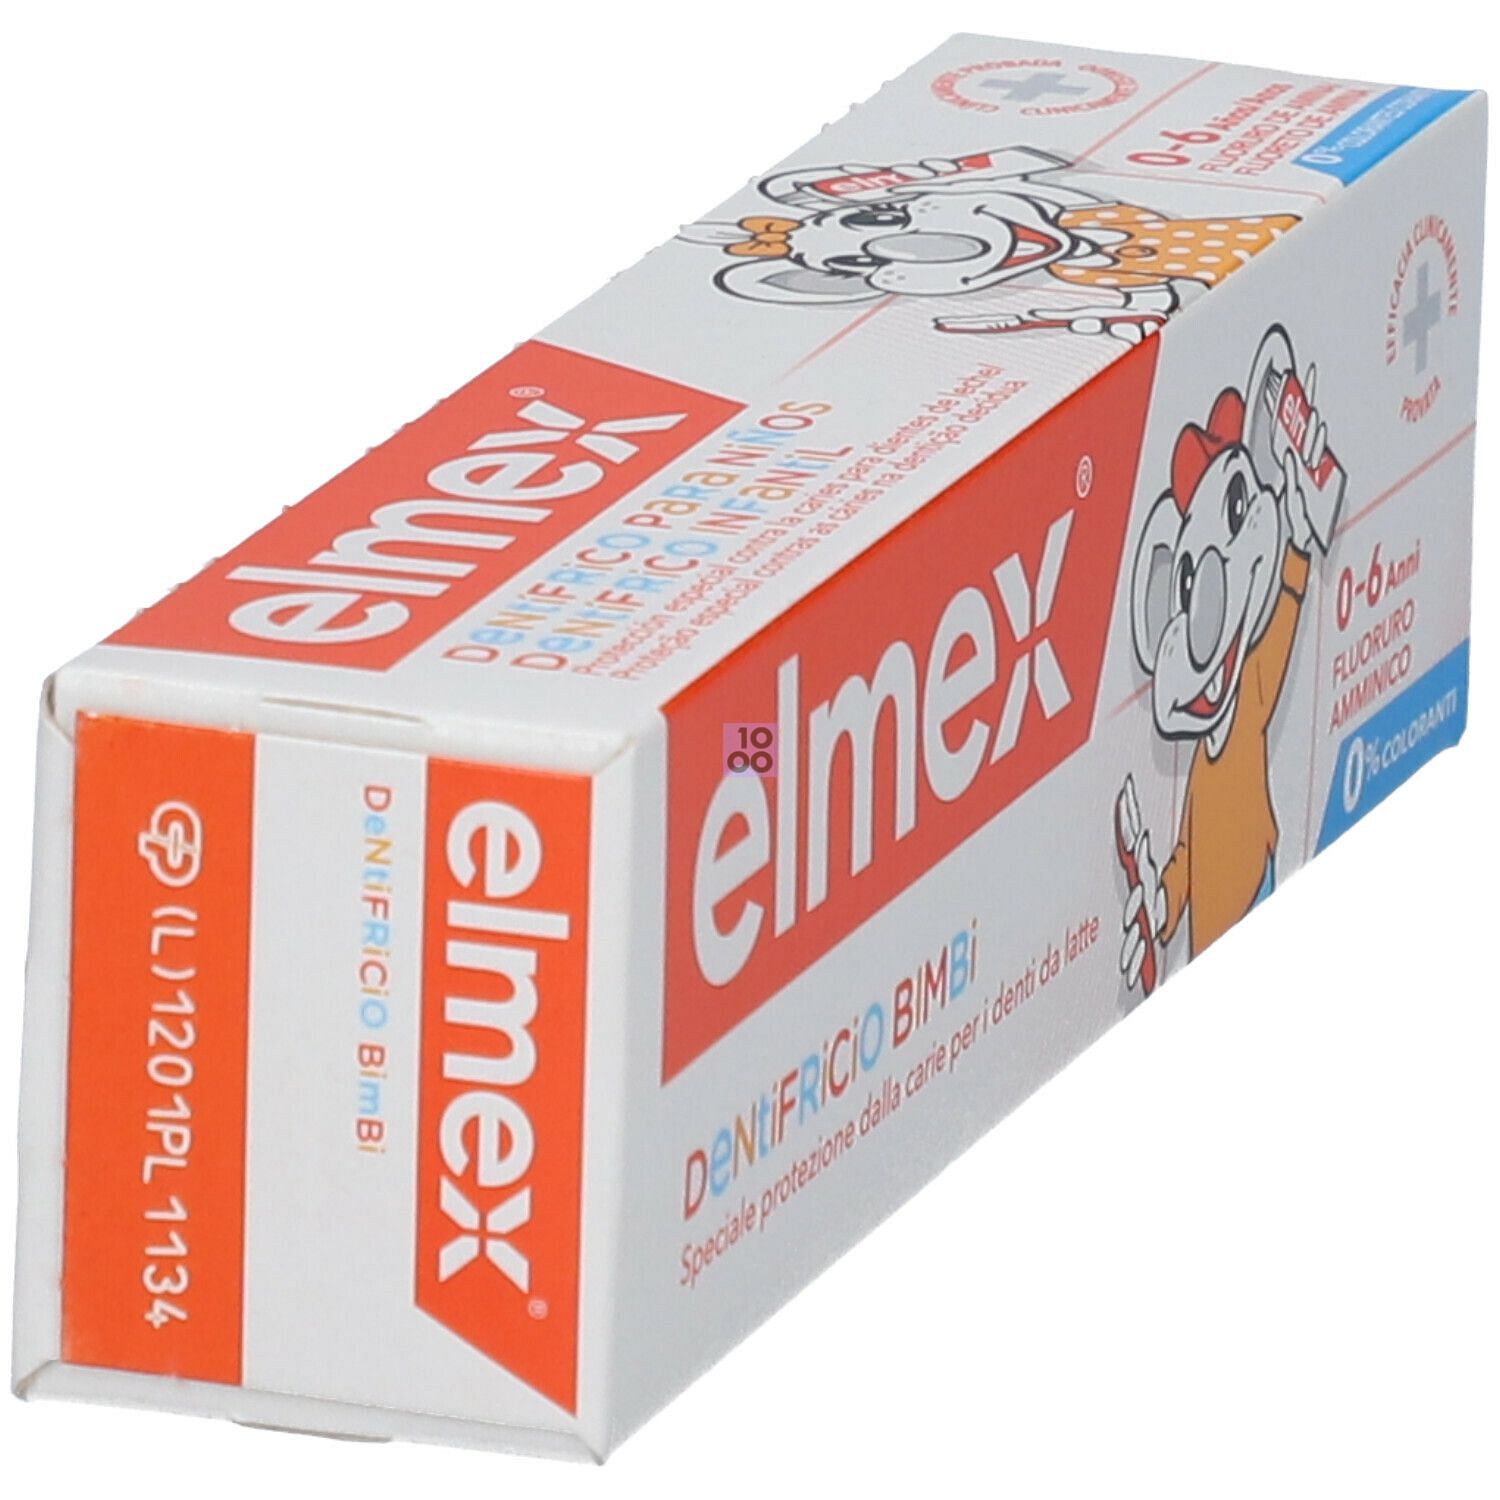 Elmex Bimbi Dentifricio 50 Ml: Utilizzo, effetti collaterali e prezzo